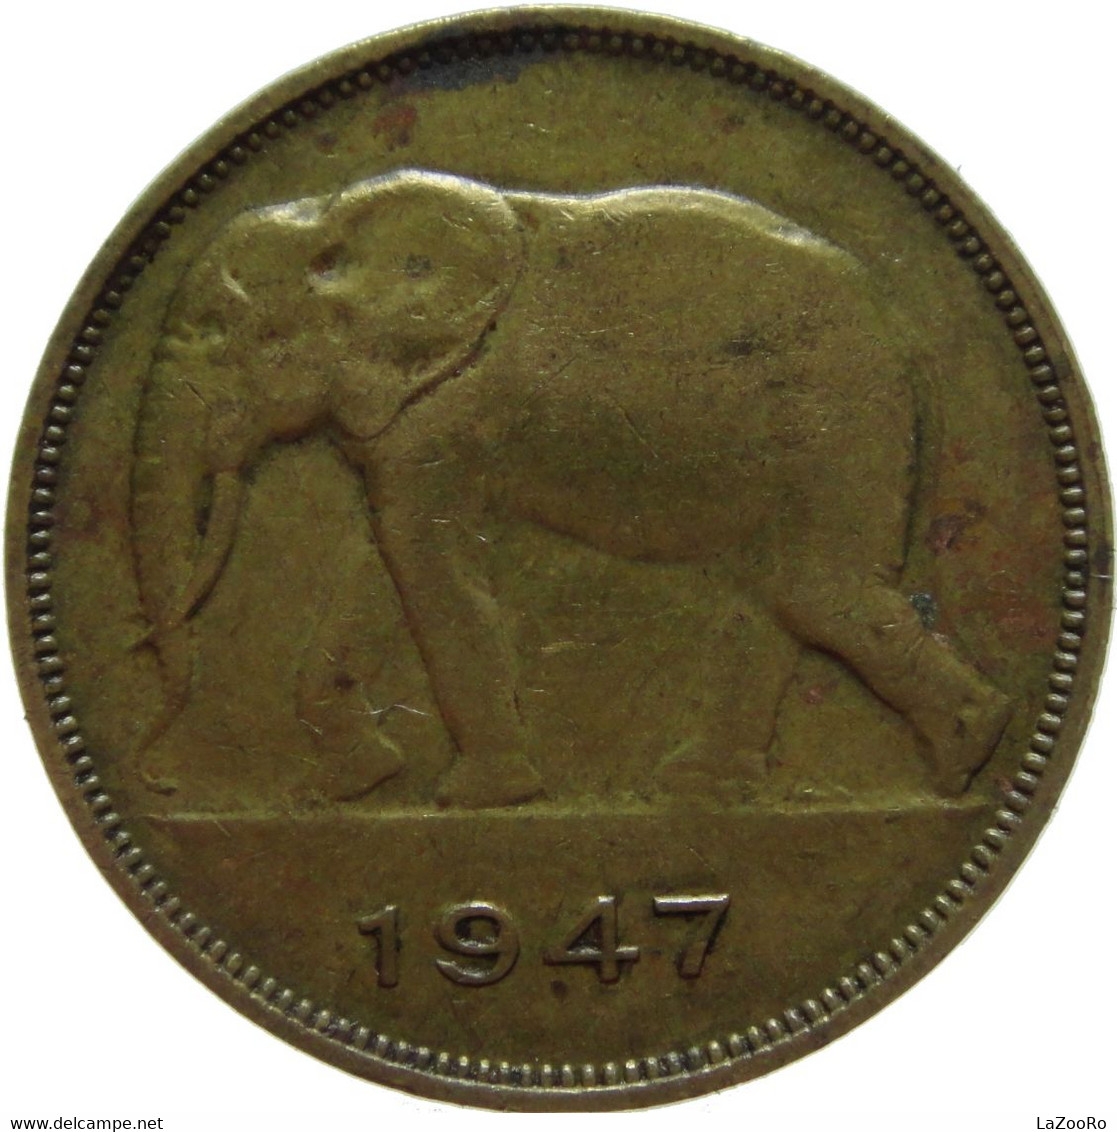 LaZooRo: Belgian Congo 5 Francs 1947 XF - 1945-1951: Regentschaft